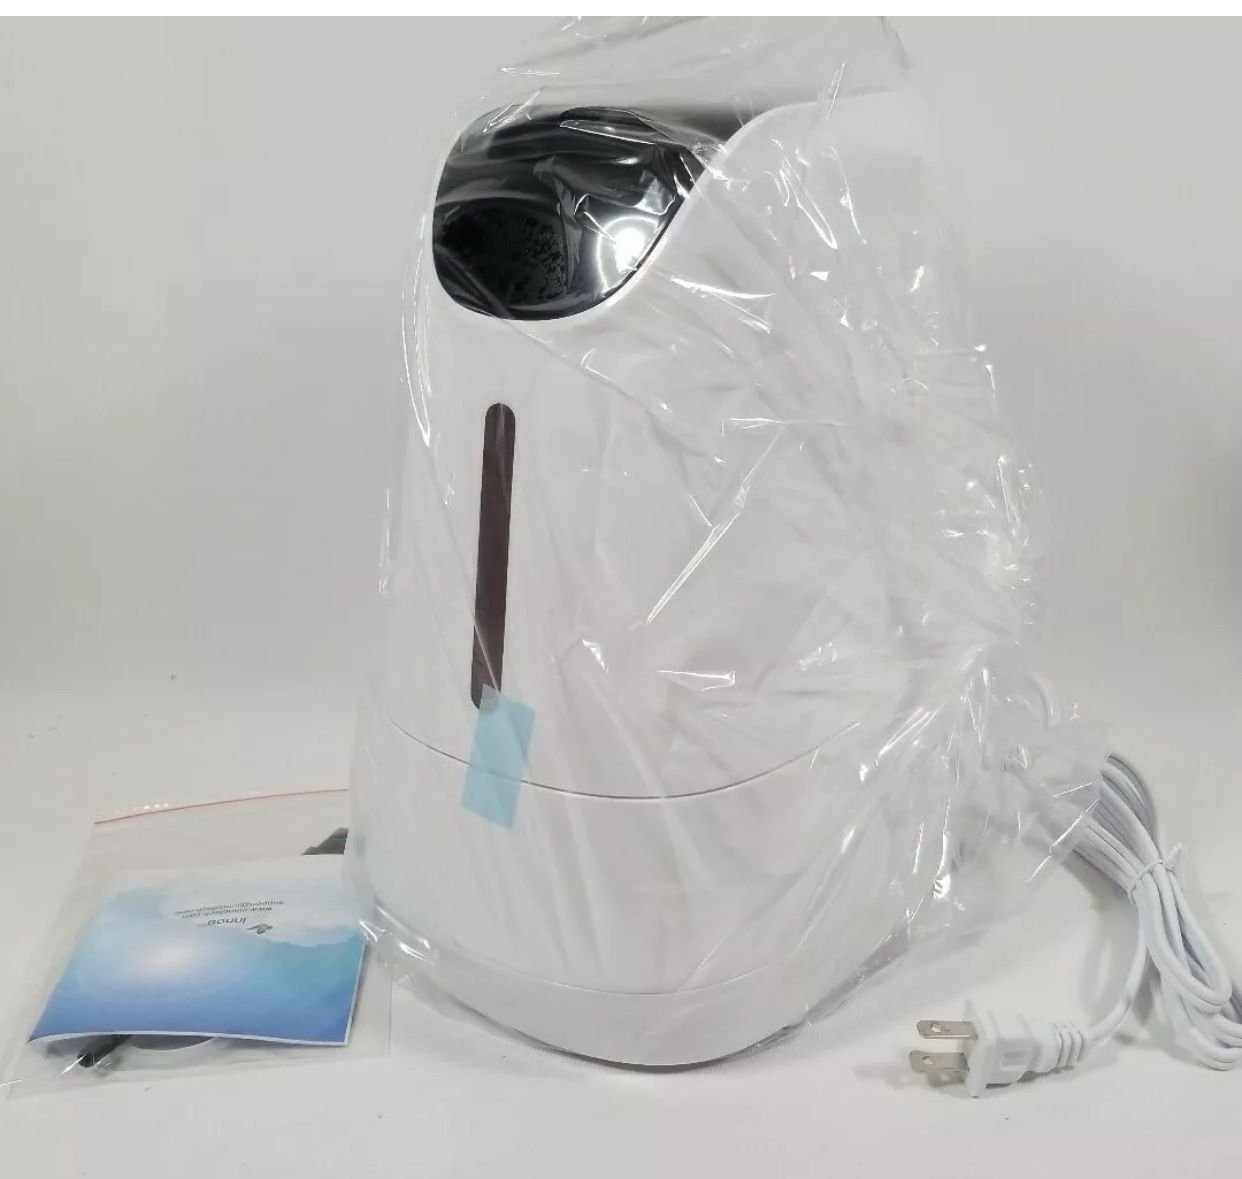 Warm & Cool Mist Humidifier by Innoo Tech 4.2L 90 Watt